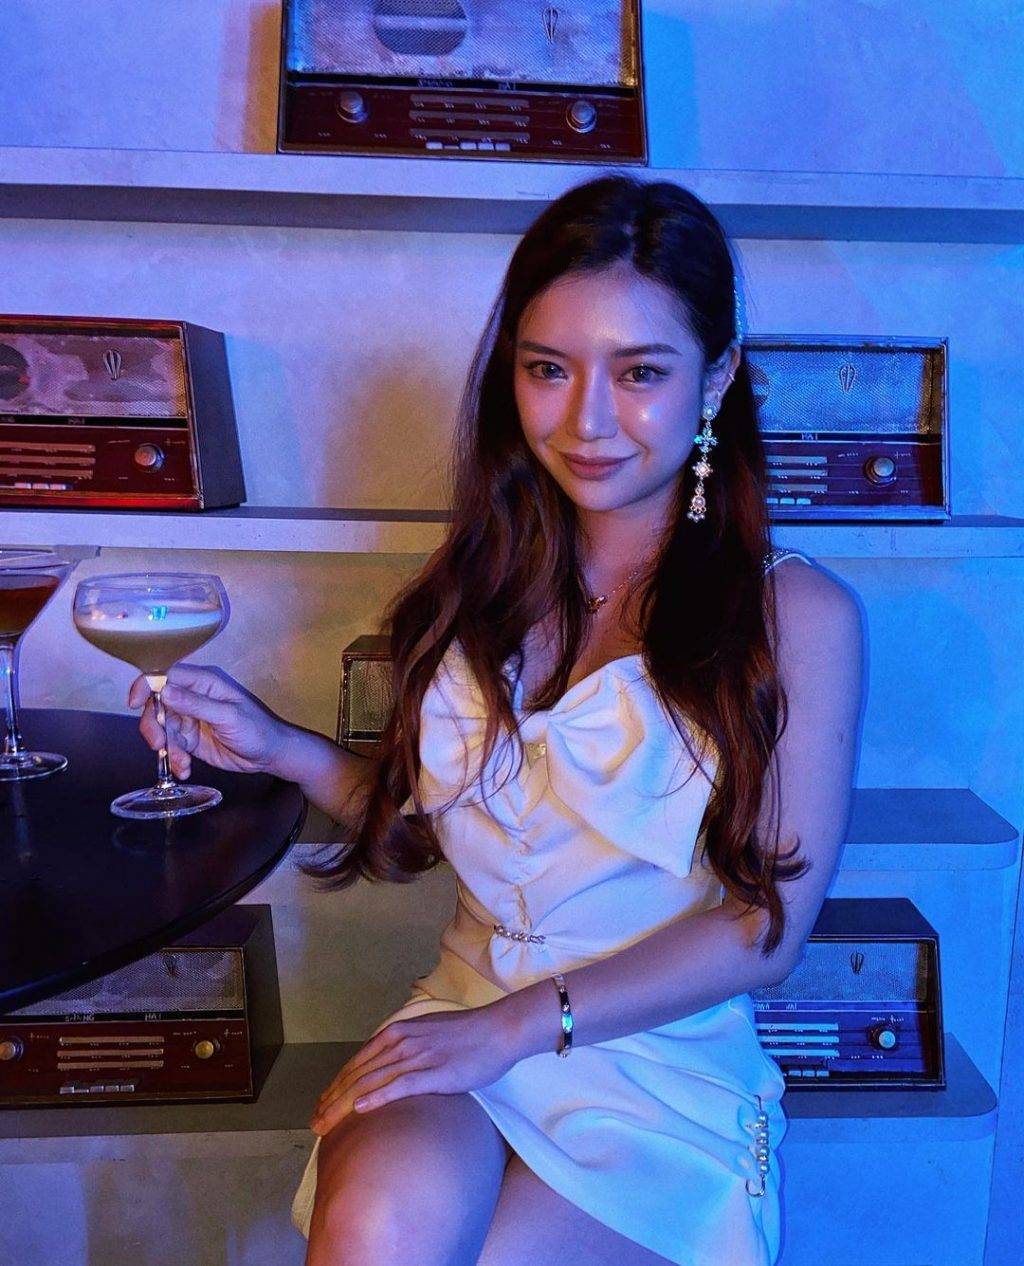 新加坡创意主题酒吧🍻 下班后来干一杯！精致高雅、高空酒吧、动感电玩、火车主题都在这里👀 